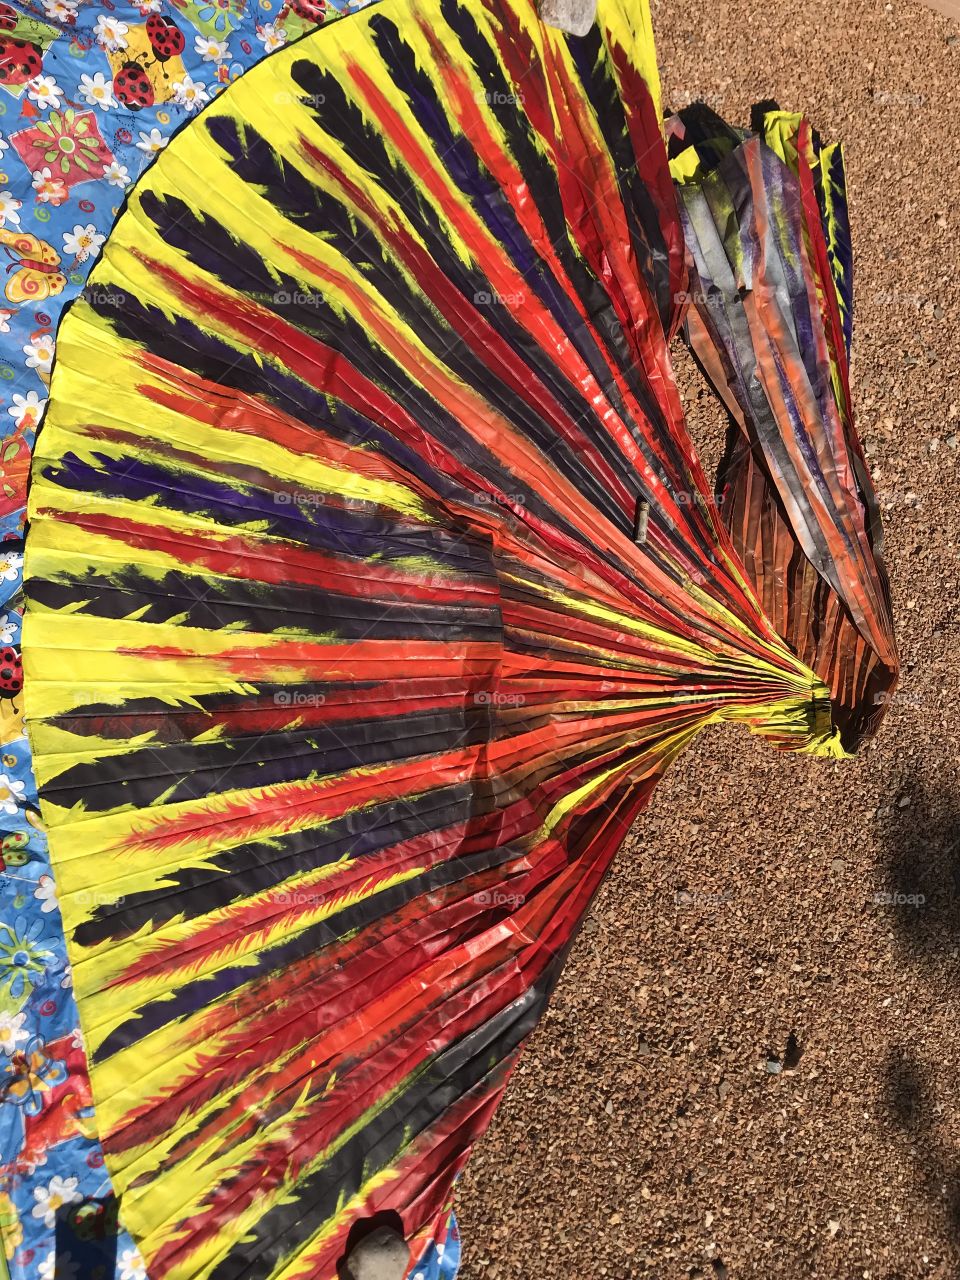 Making Phoenix fire bird wings 